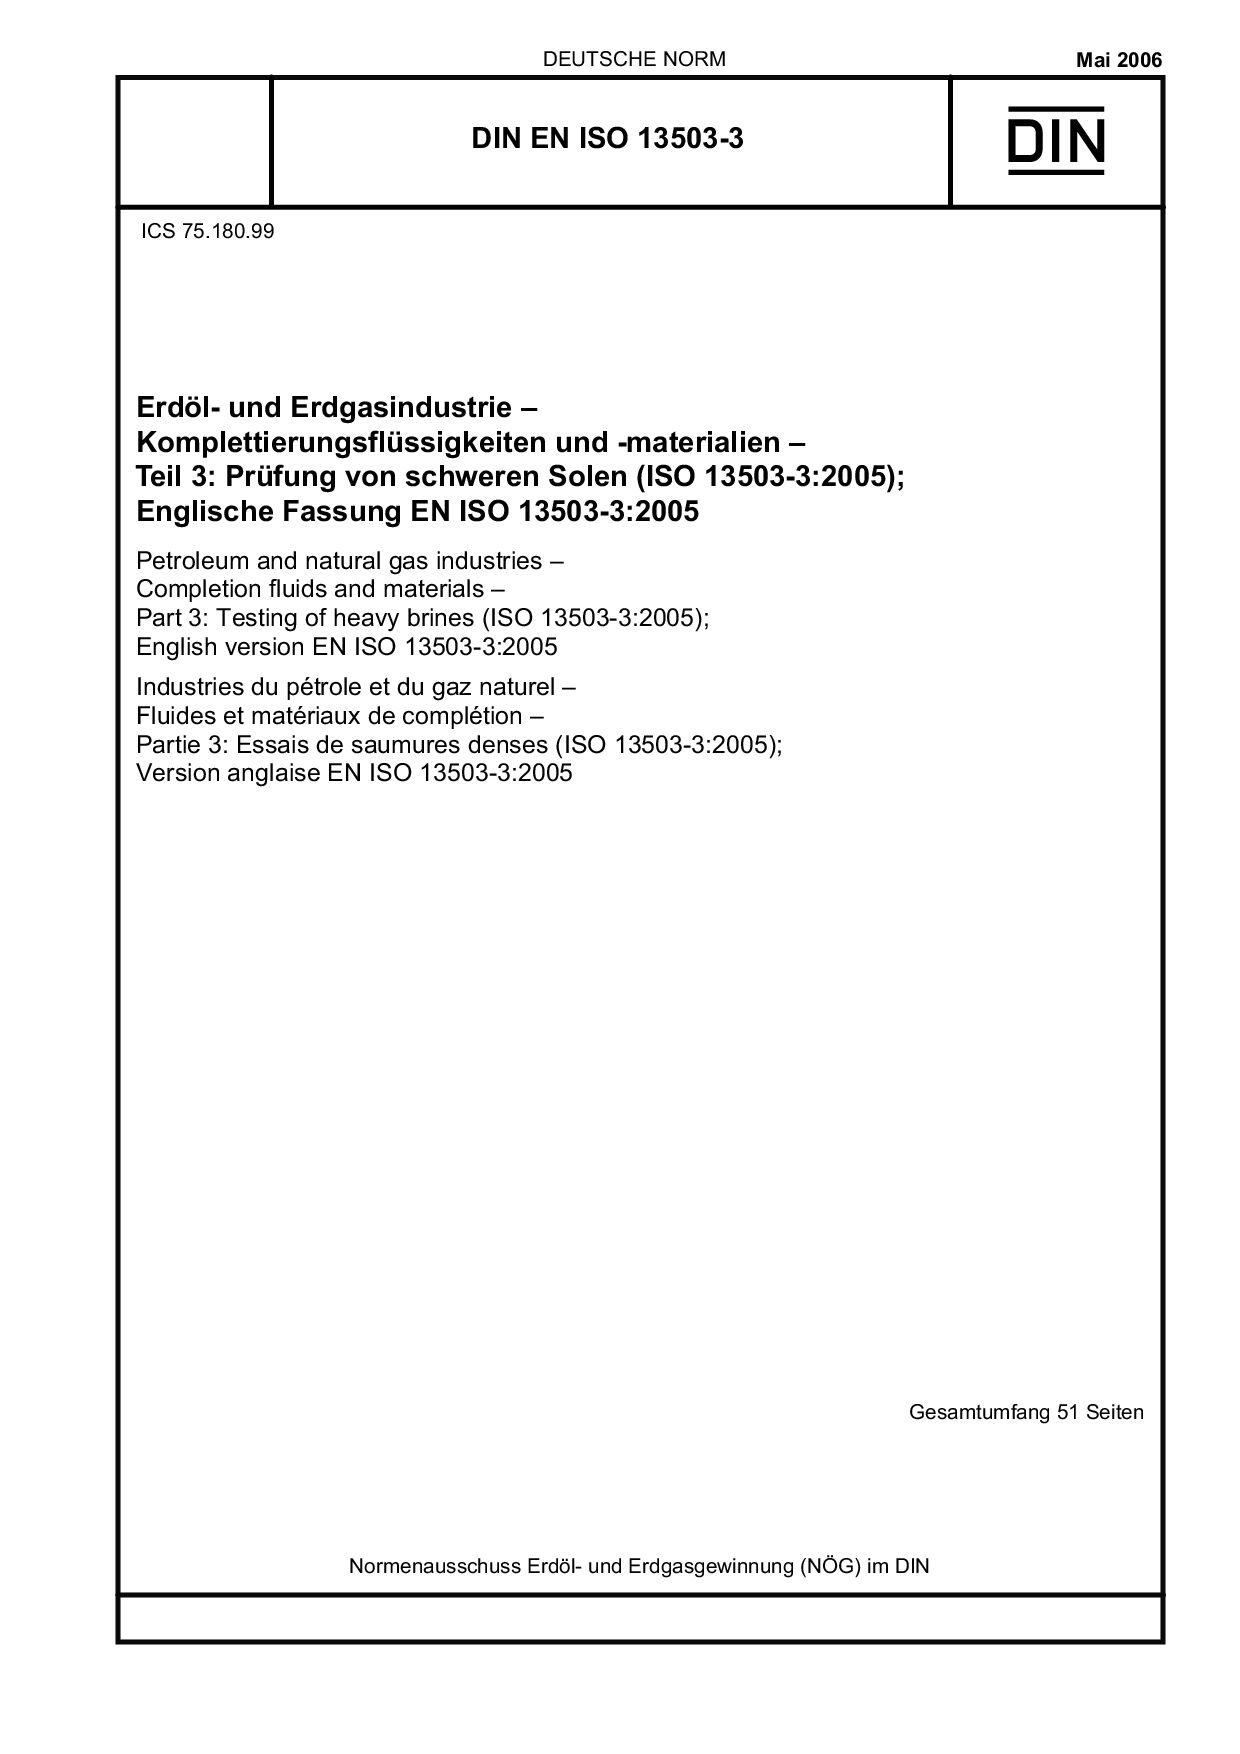 DIN EN ISO 13503-3:2006